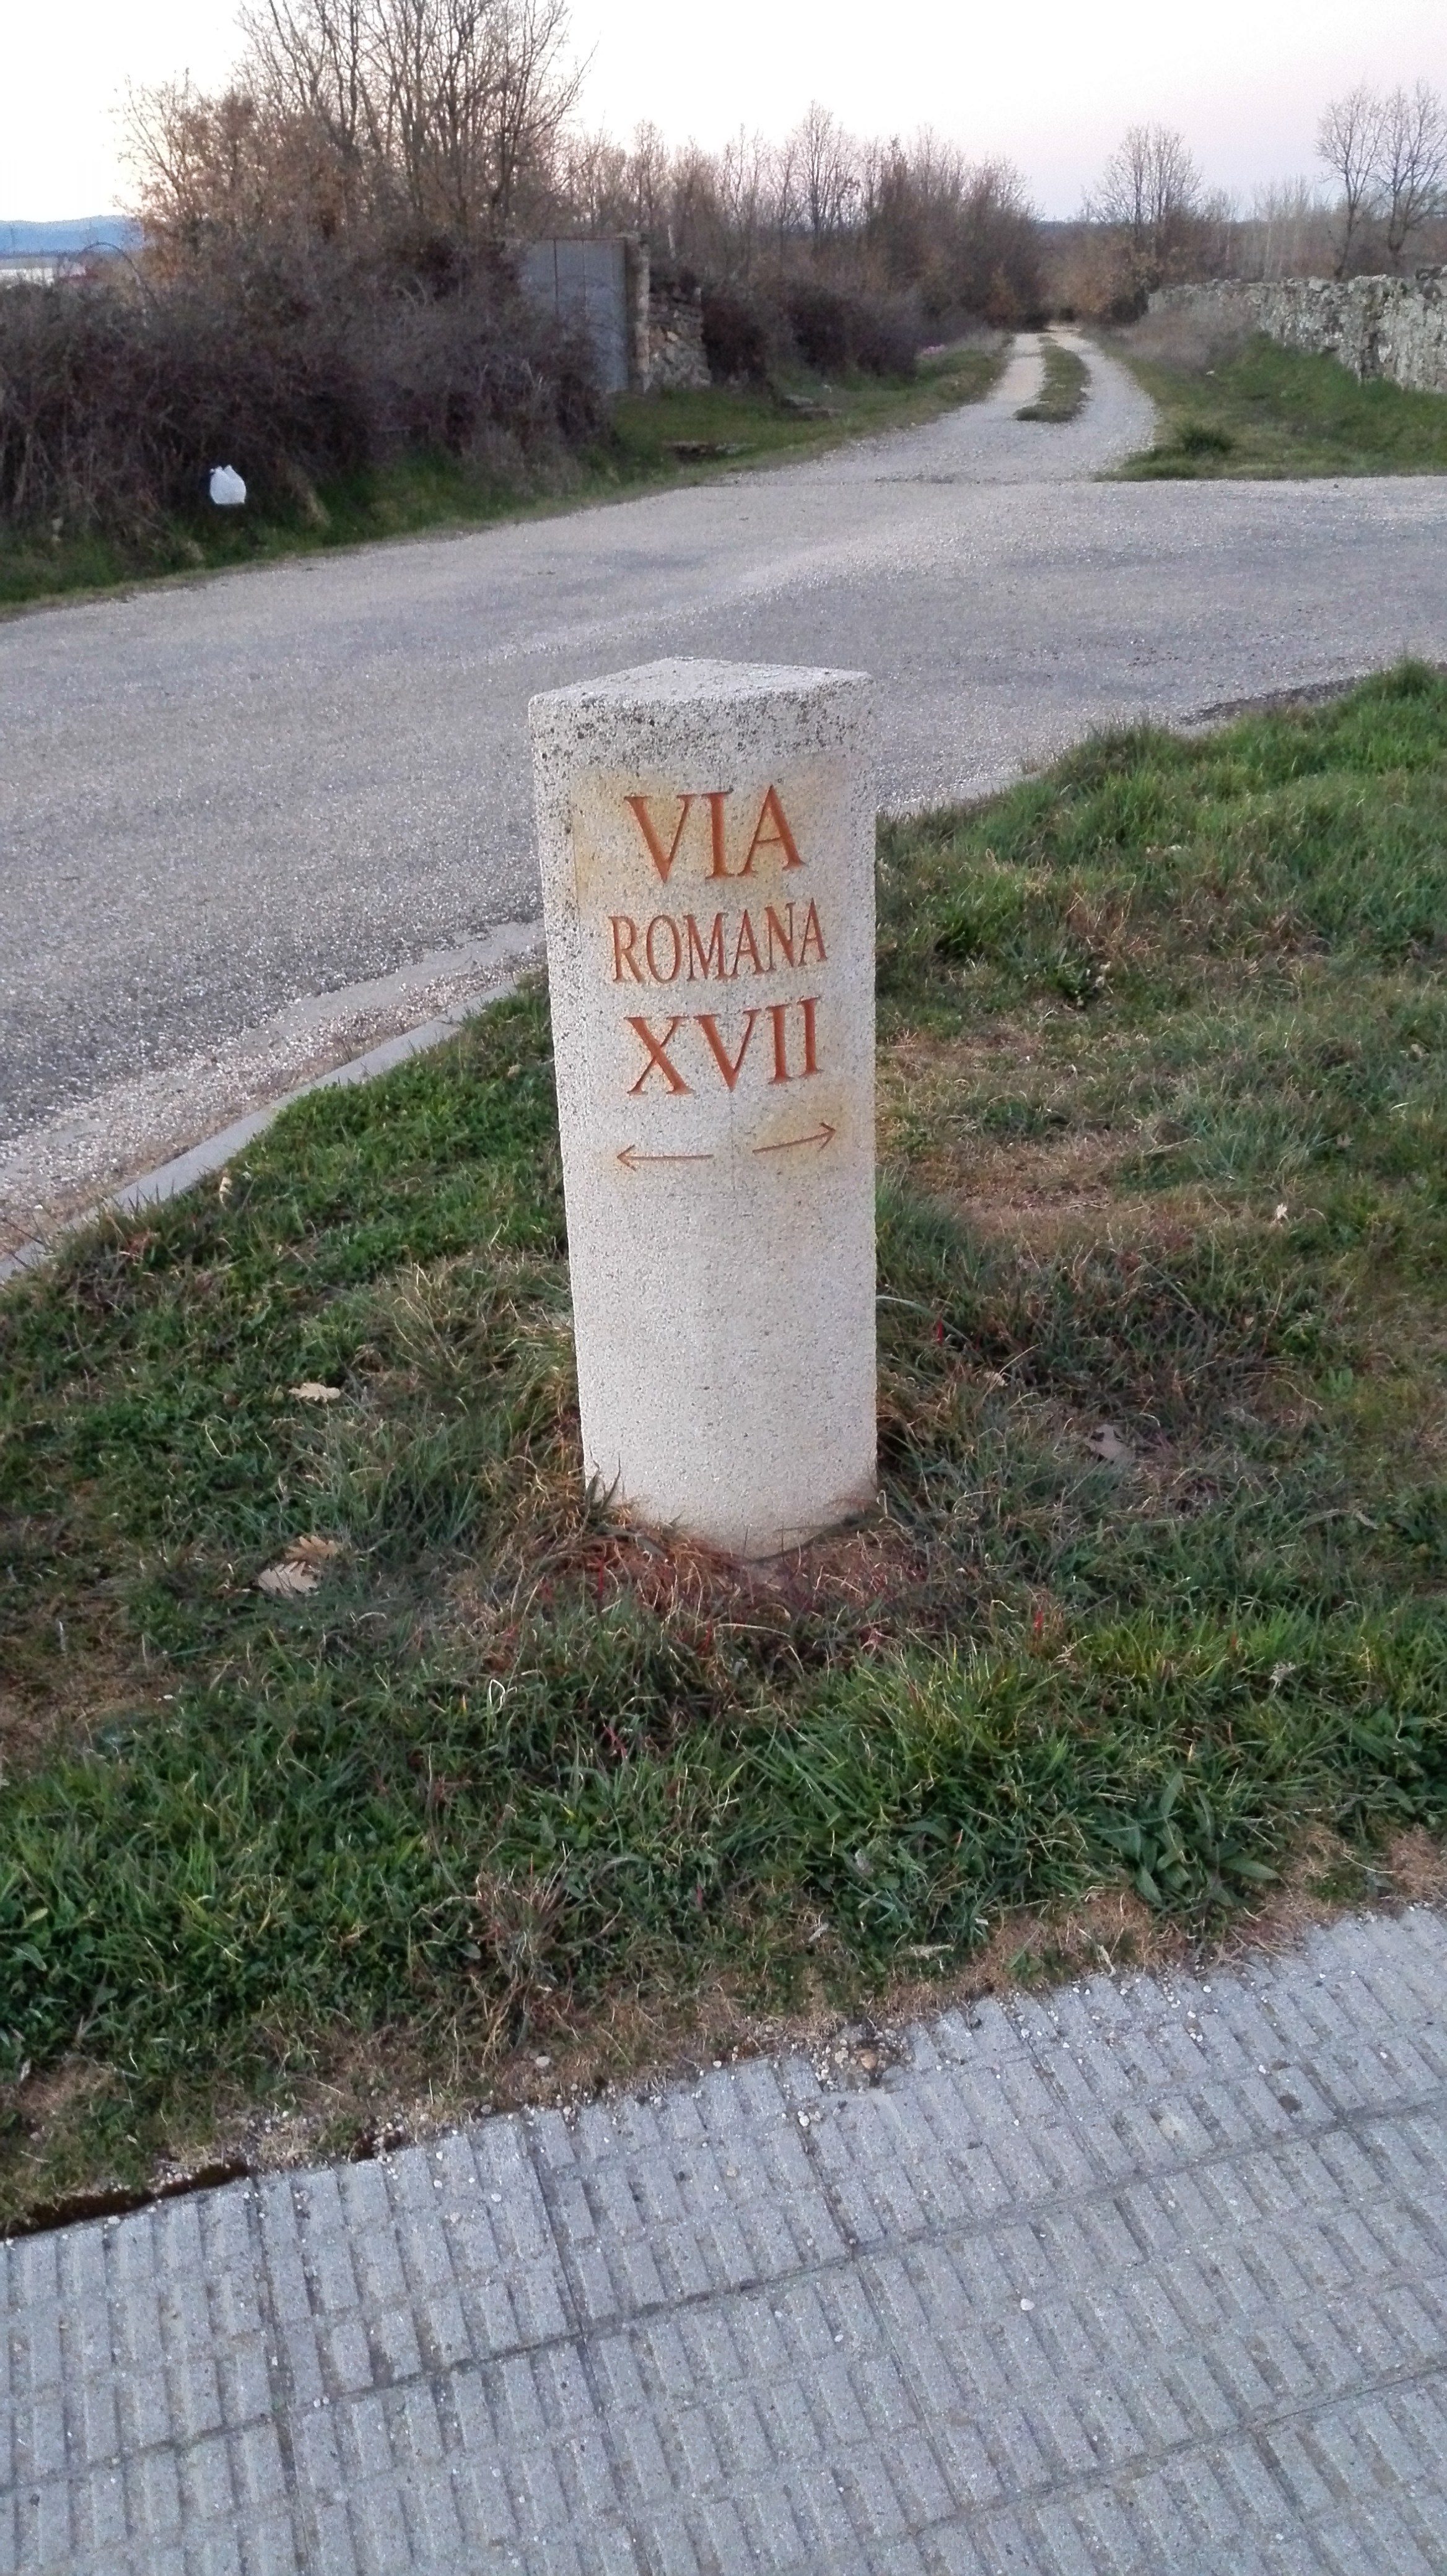 Vía romana XVII